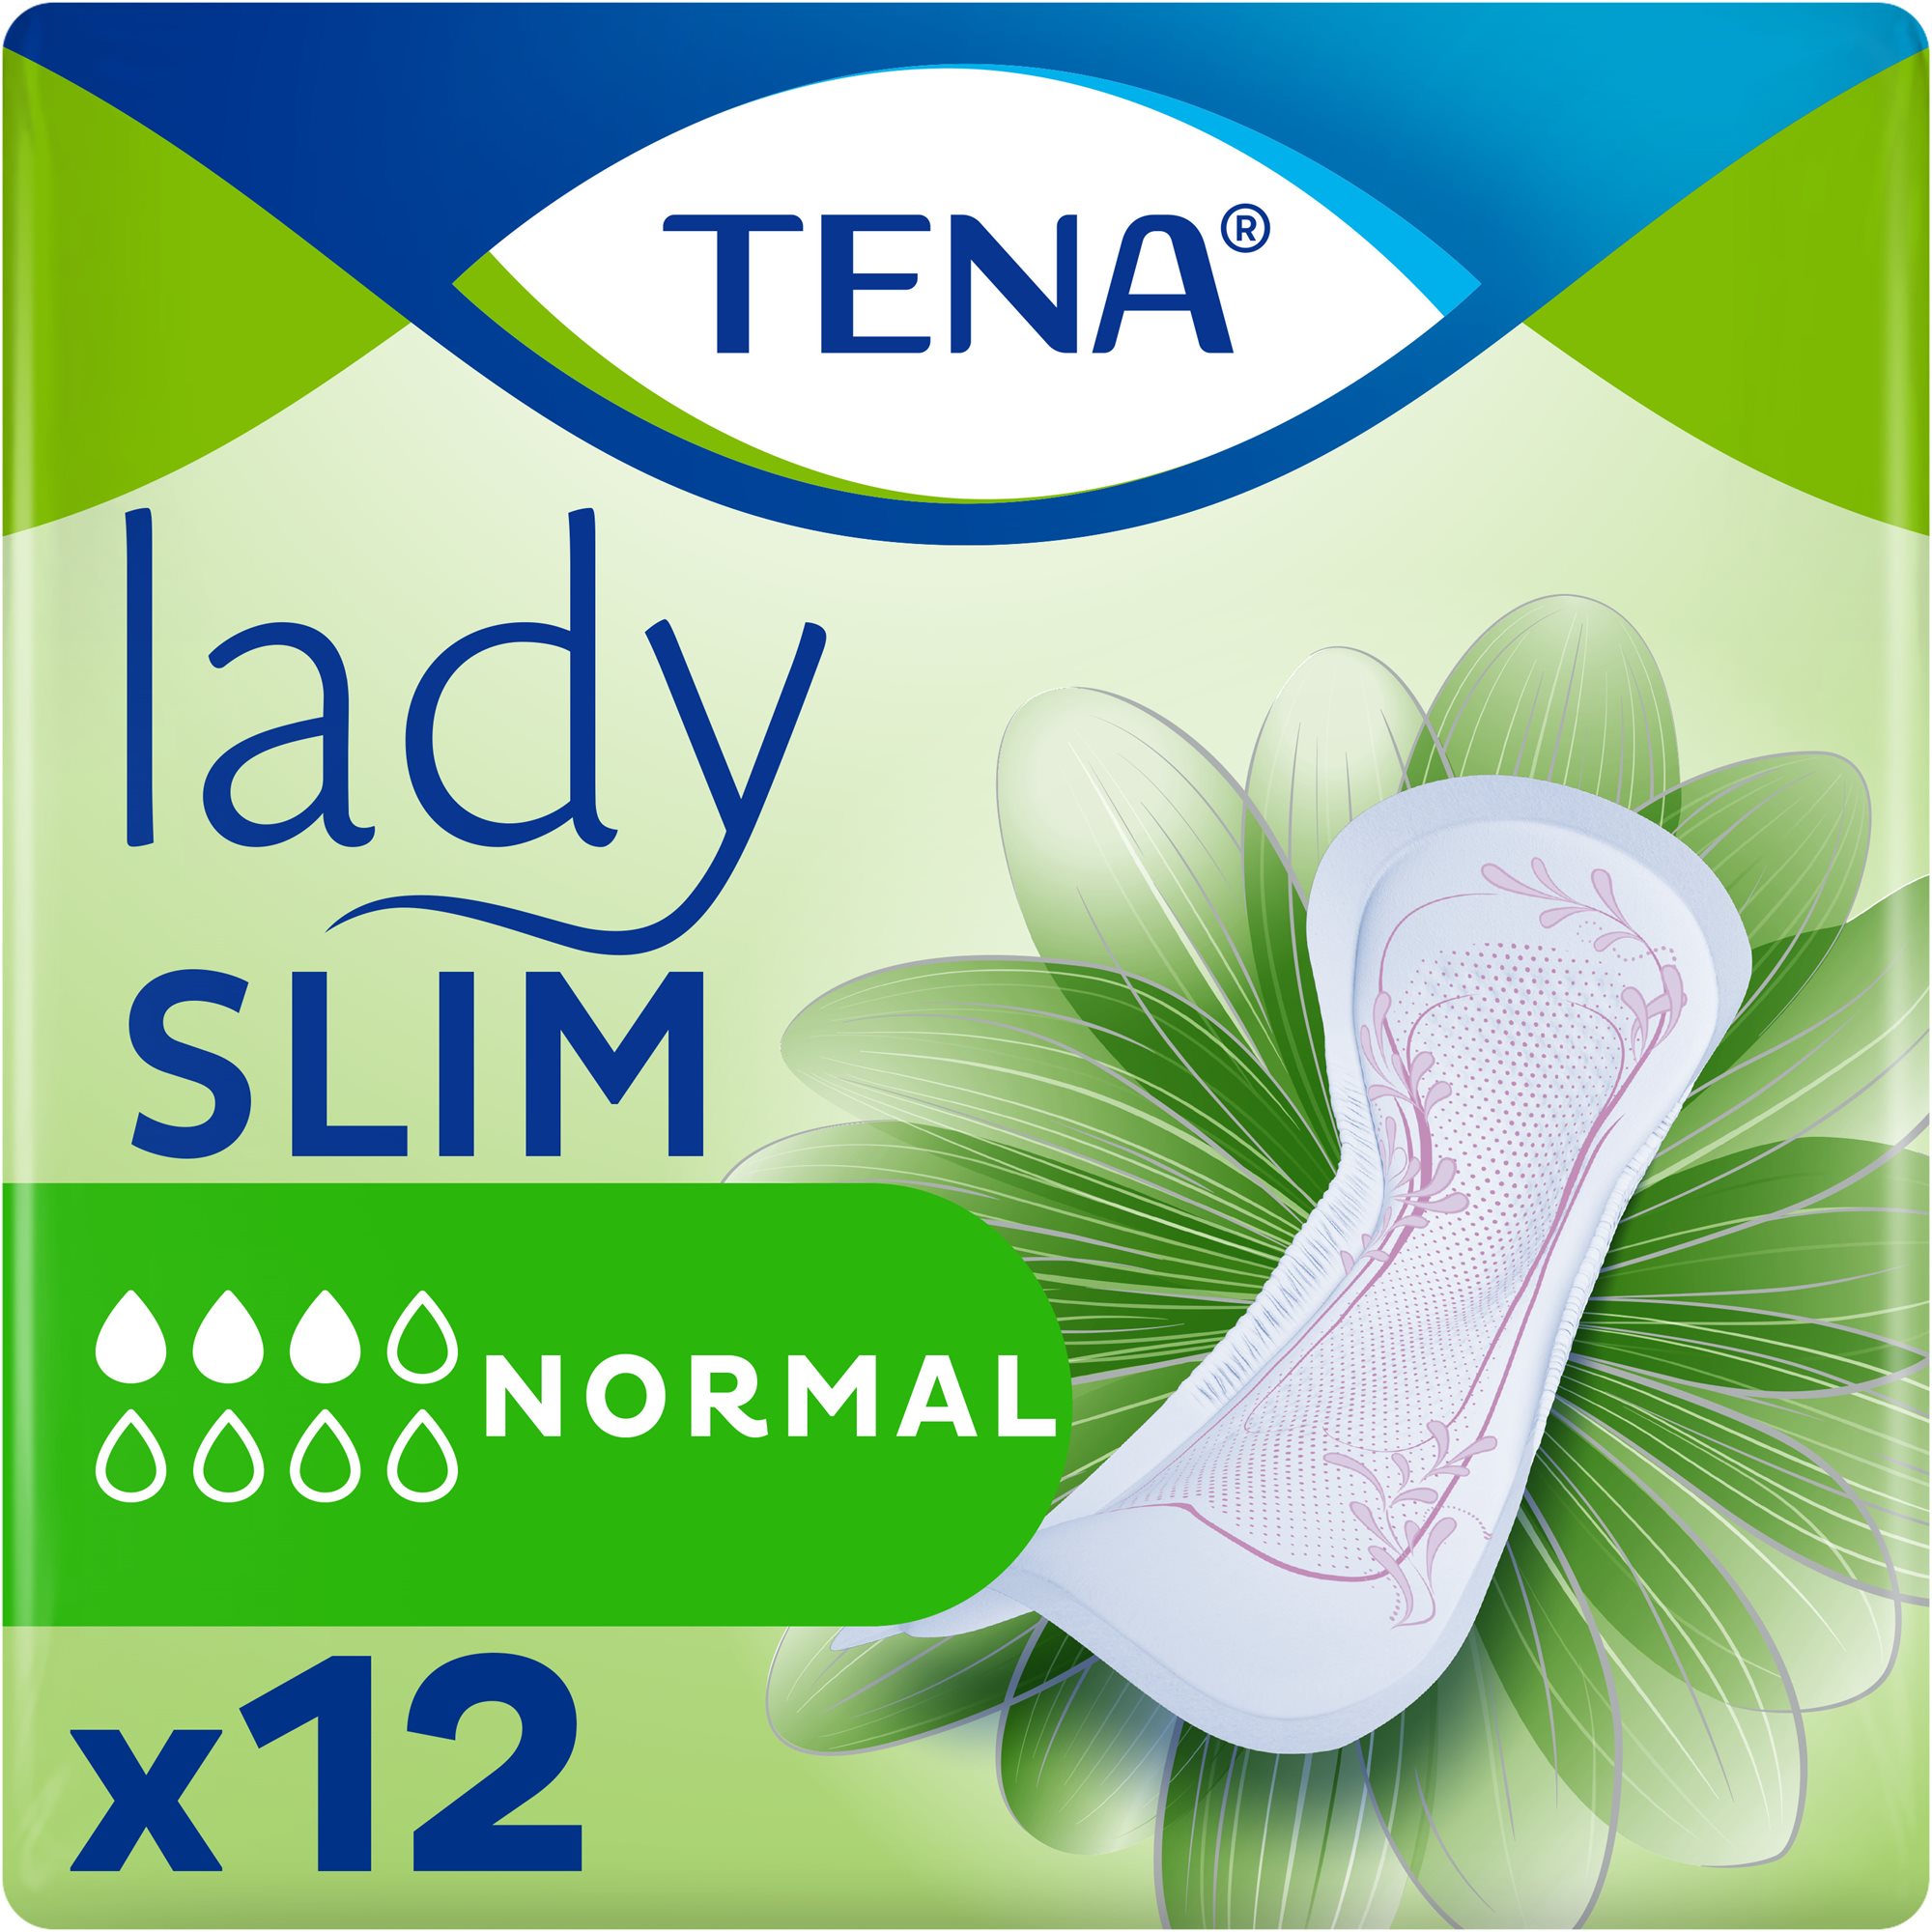 TENA Lady Slim Normal 12 db